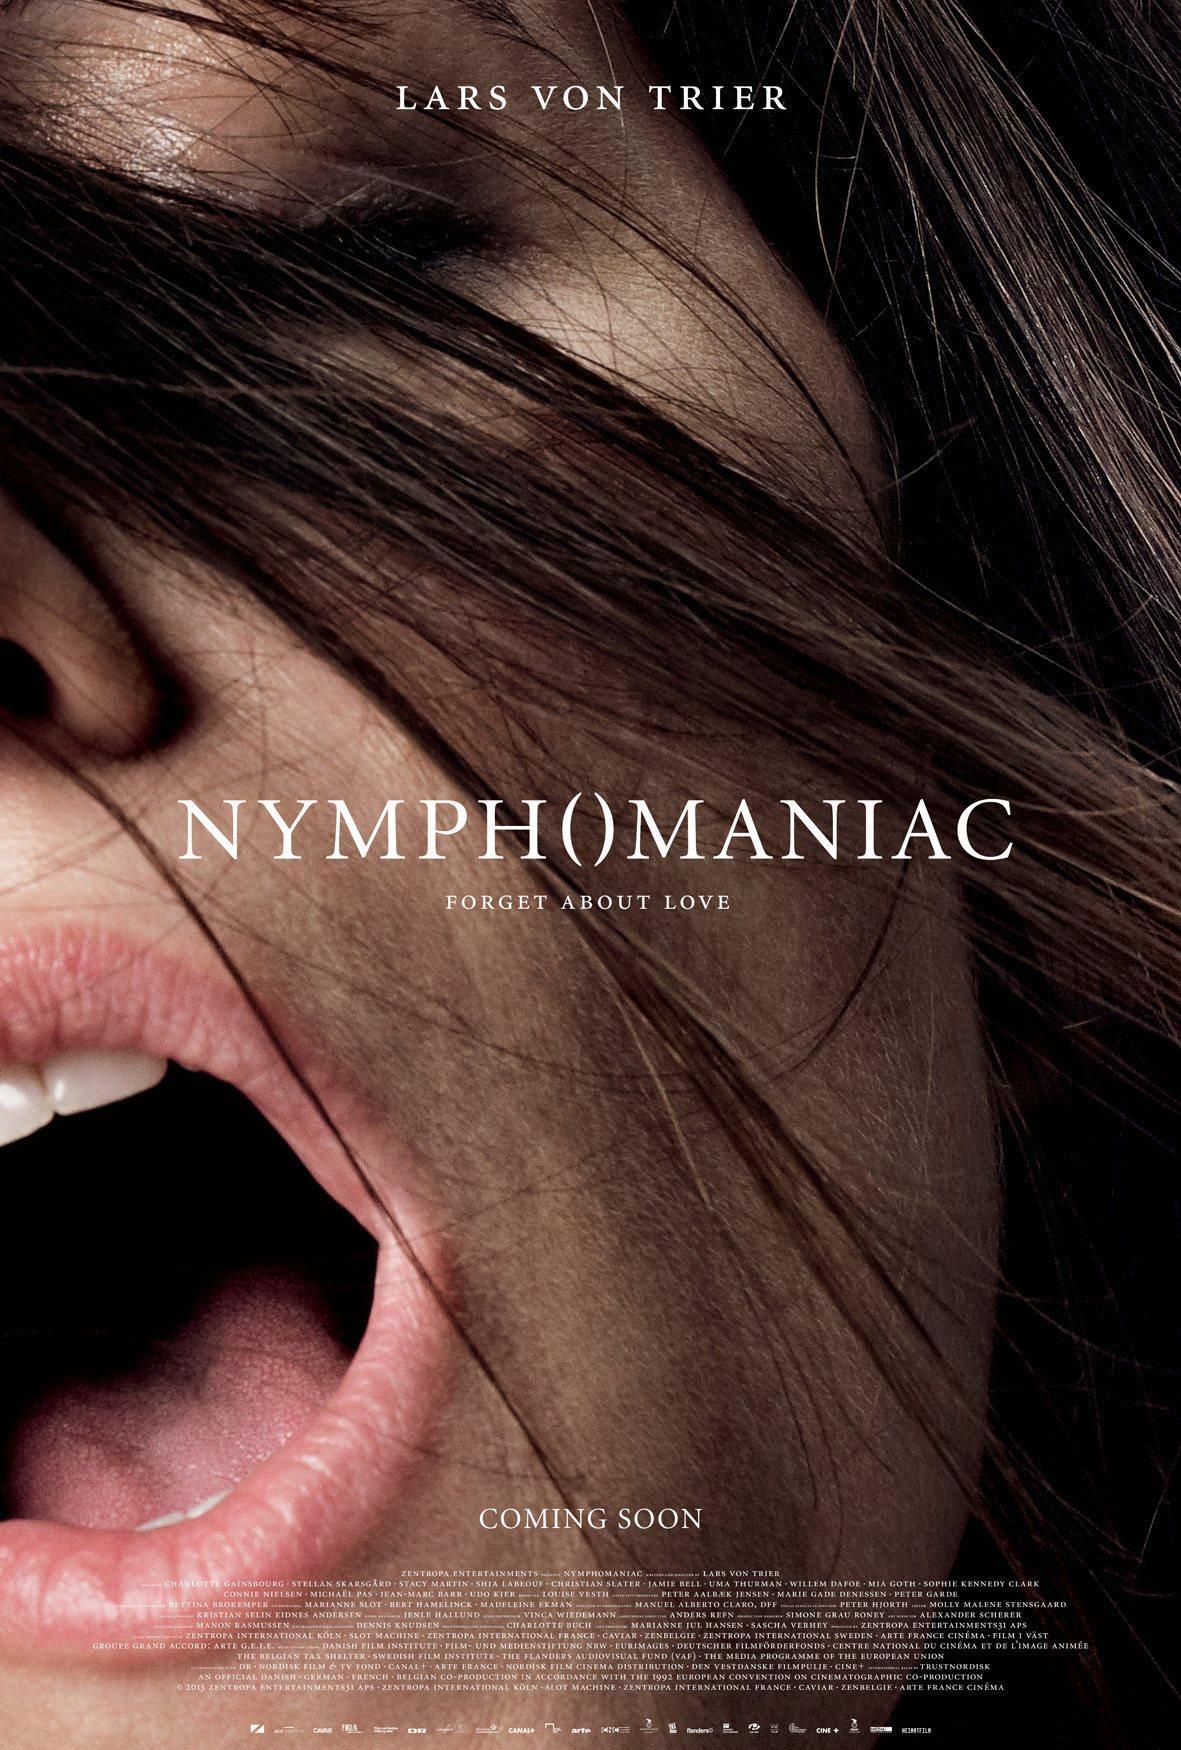 Постер фильма Нимфоманка: Часть 1 | Nymphomaniac